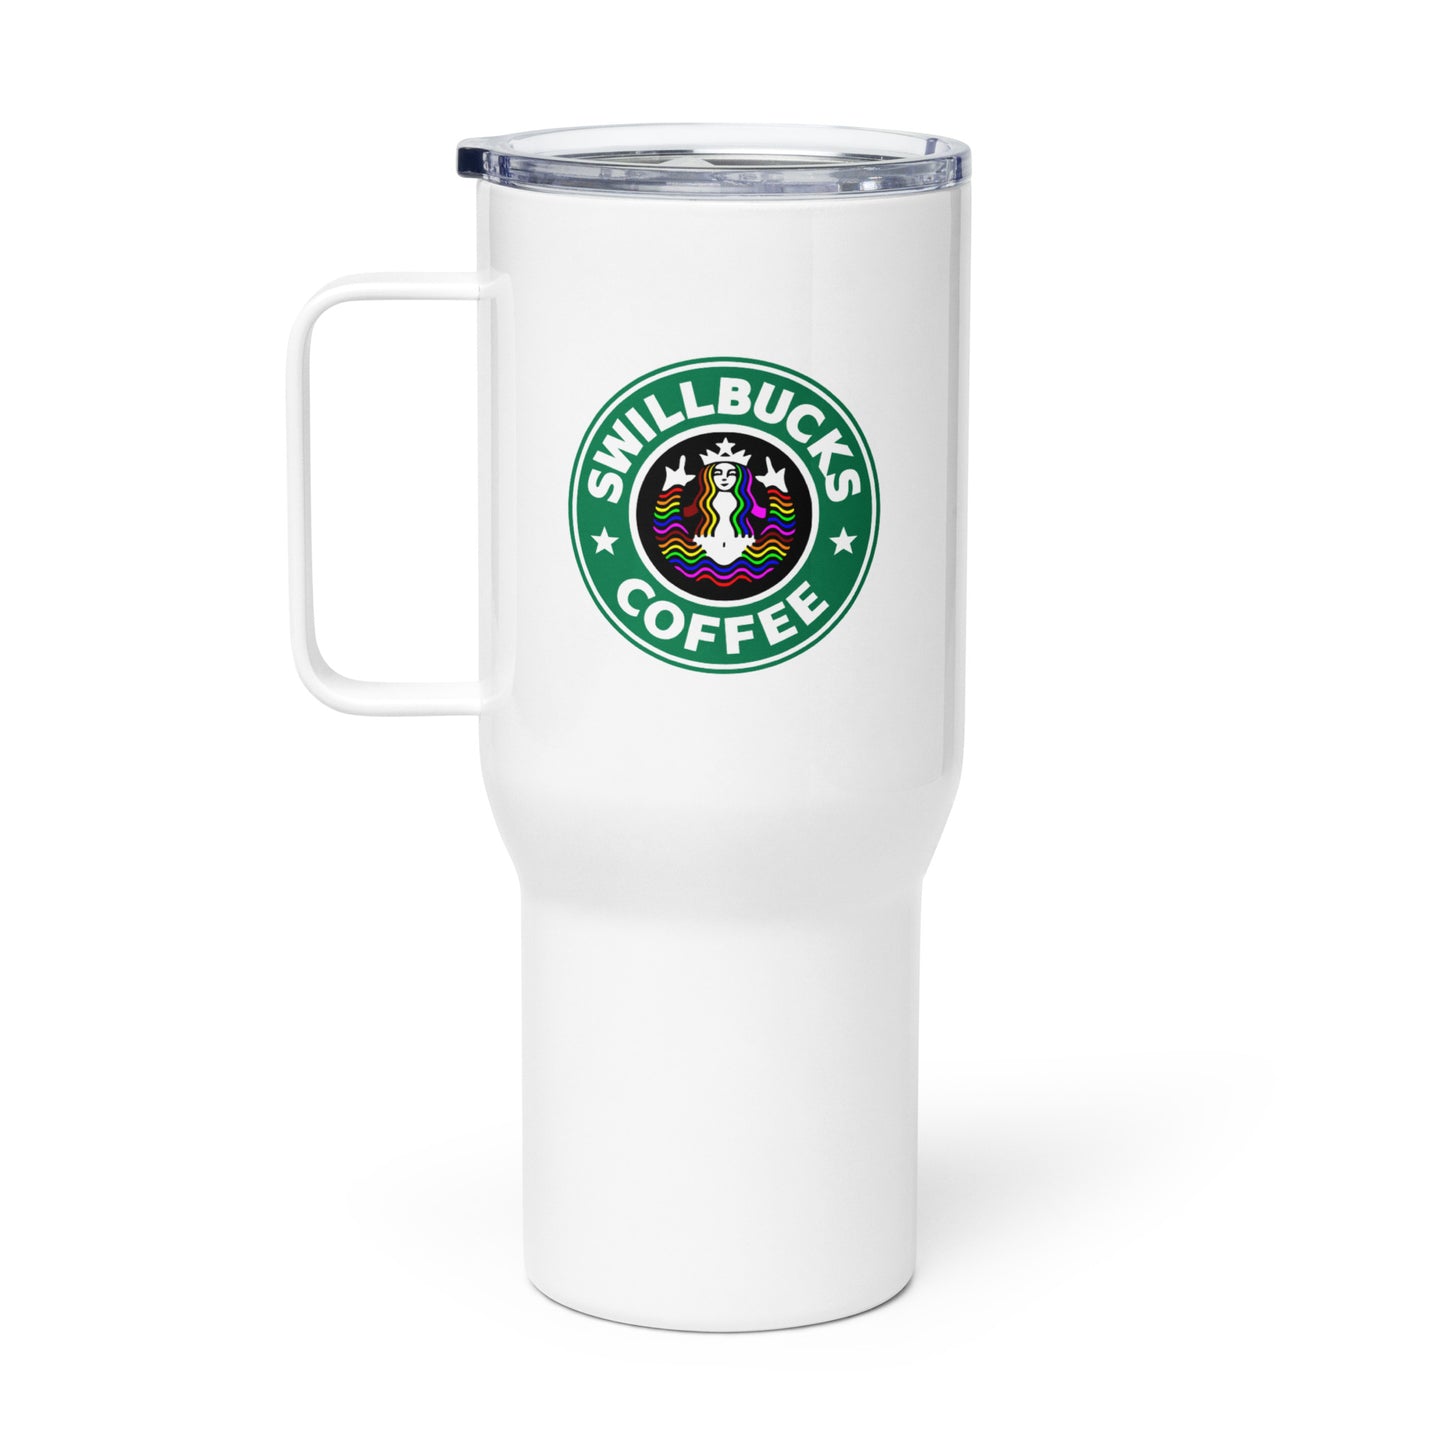 SB Travel mug with a handle